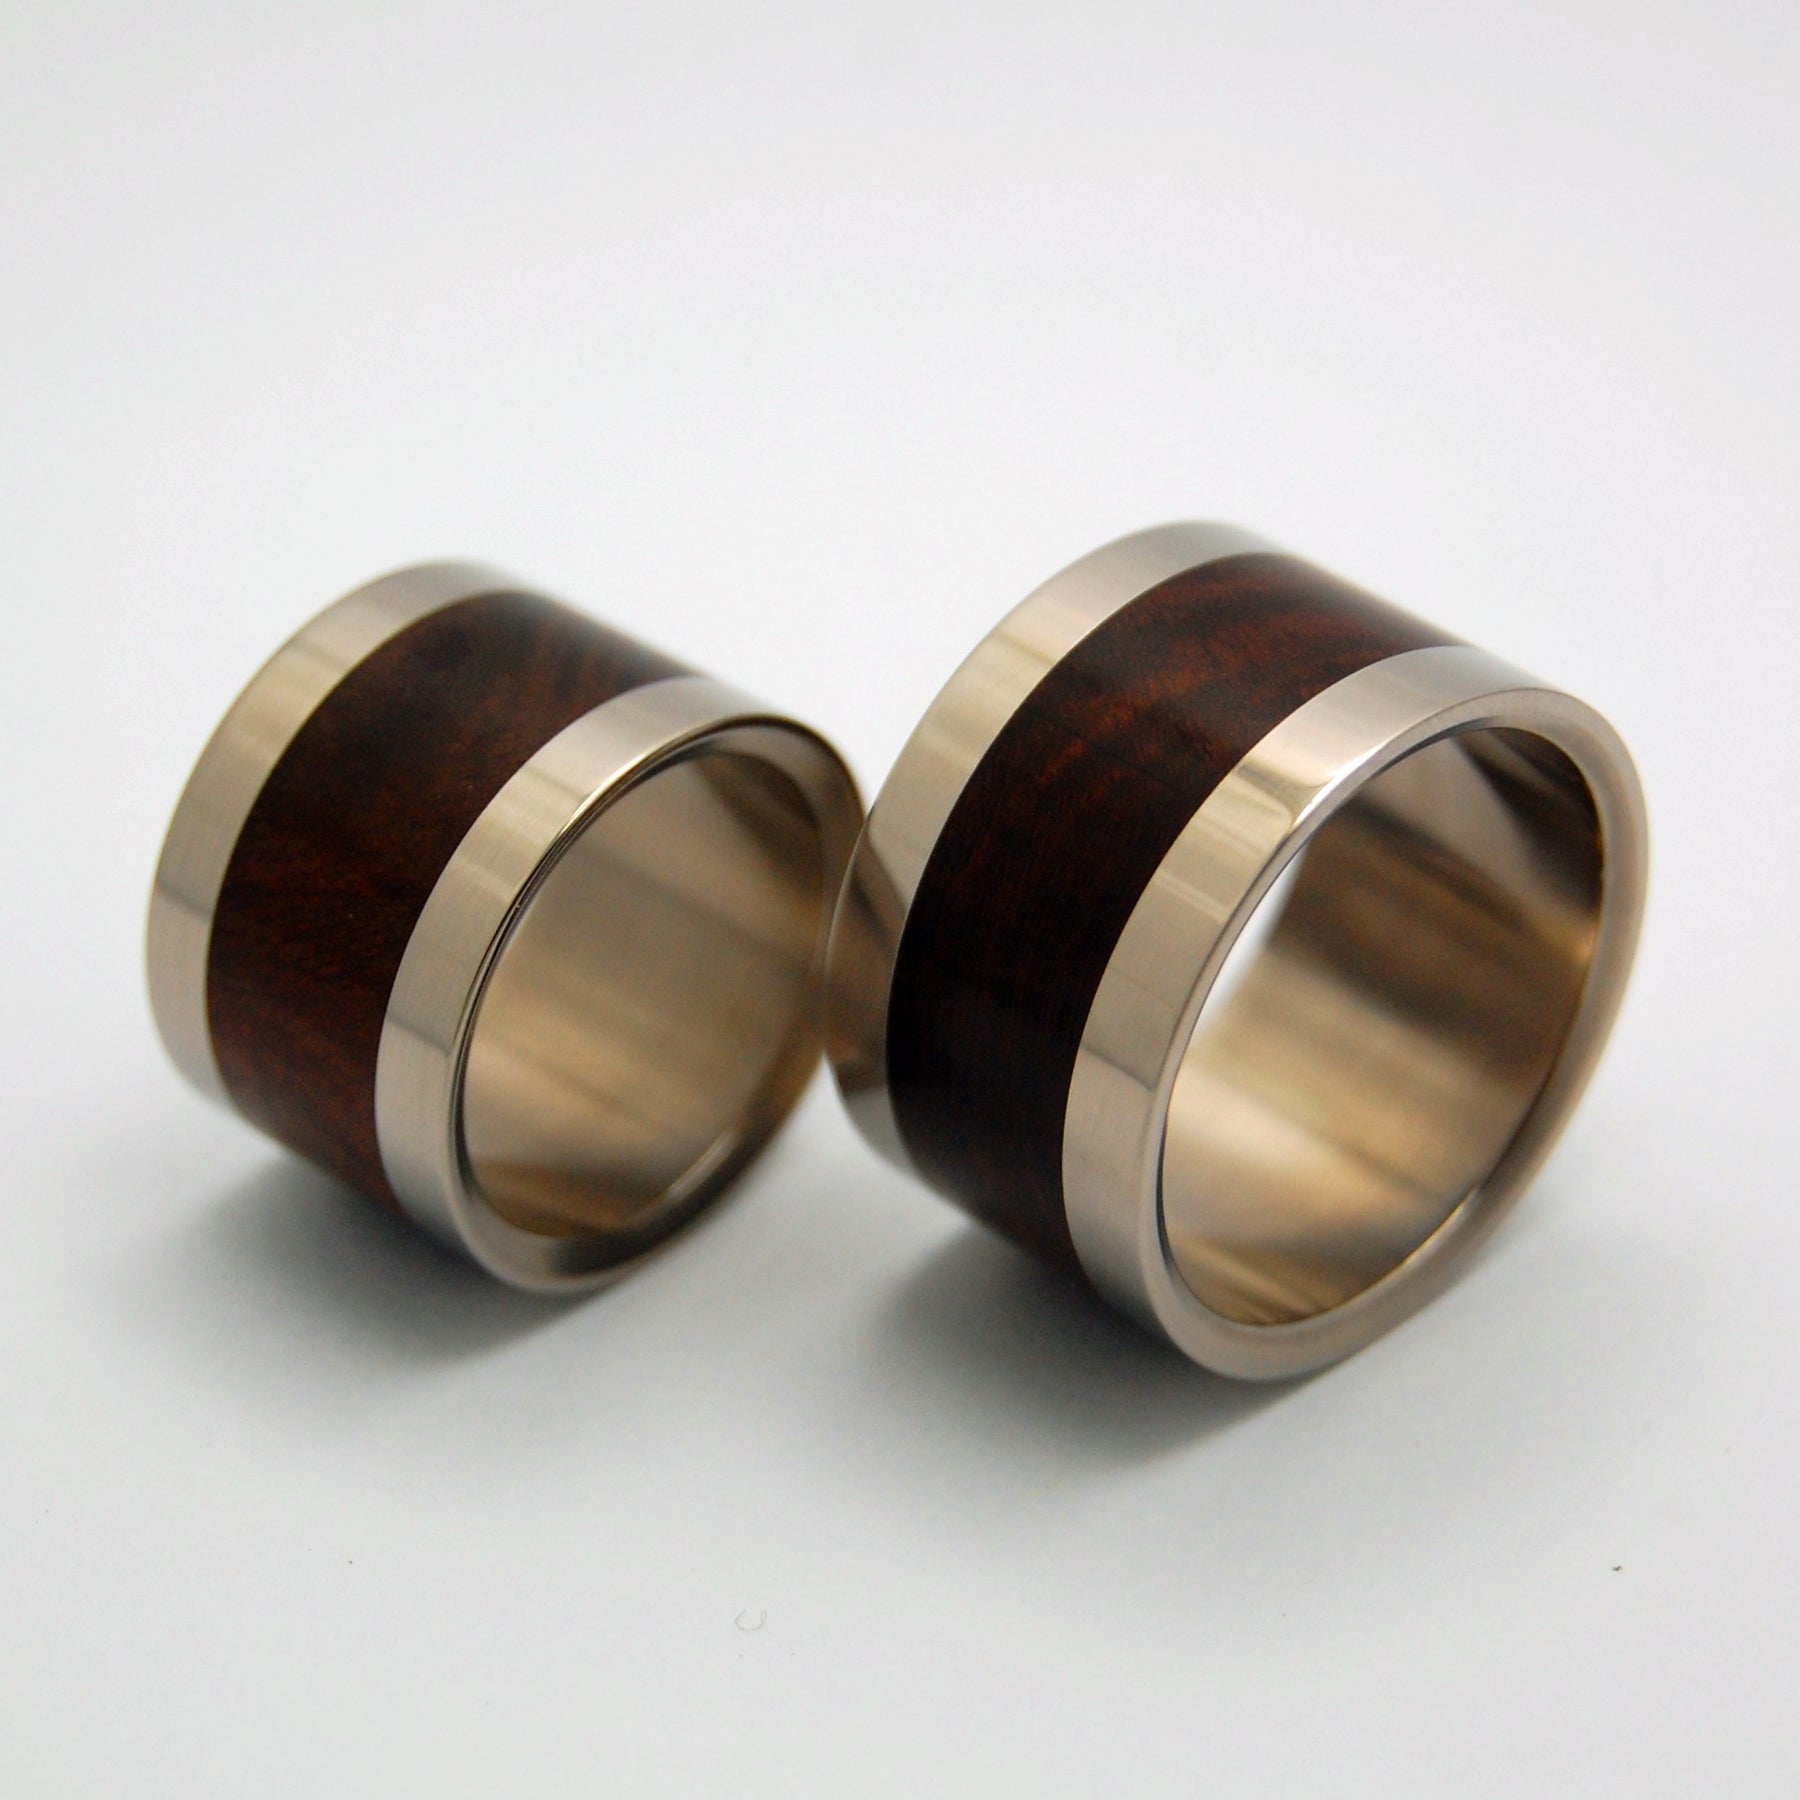 MANZANITE IN LOVE | Manzanite Wood & Titanium - Wooden Wedding Rings - Minter and Richter Designs